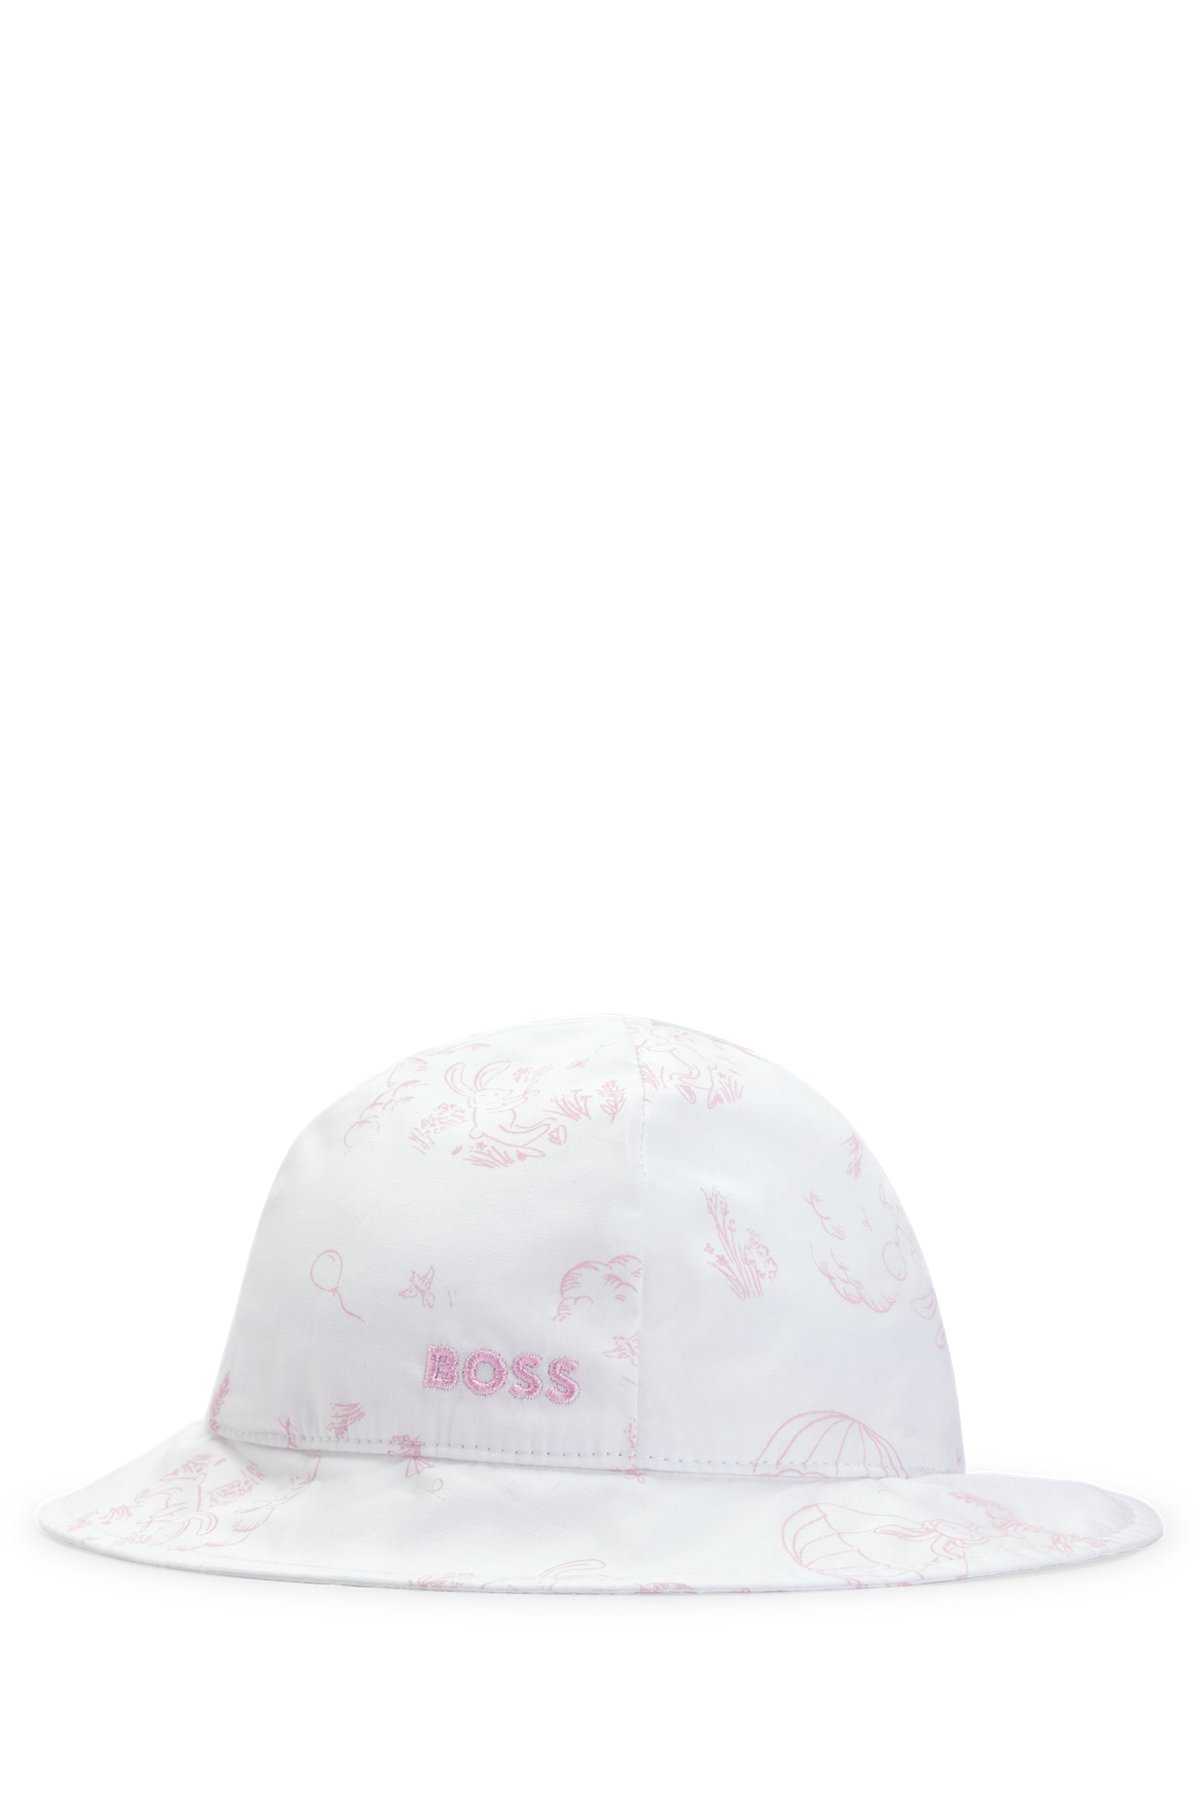 Rabbit-print baby hat with tie-up fastener, White